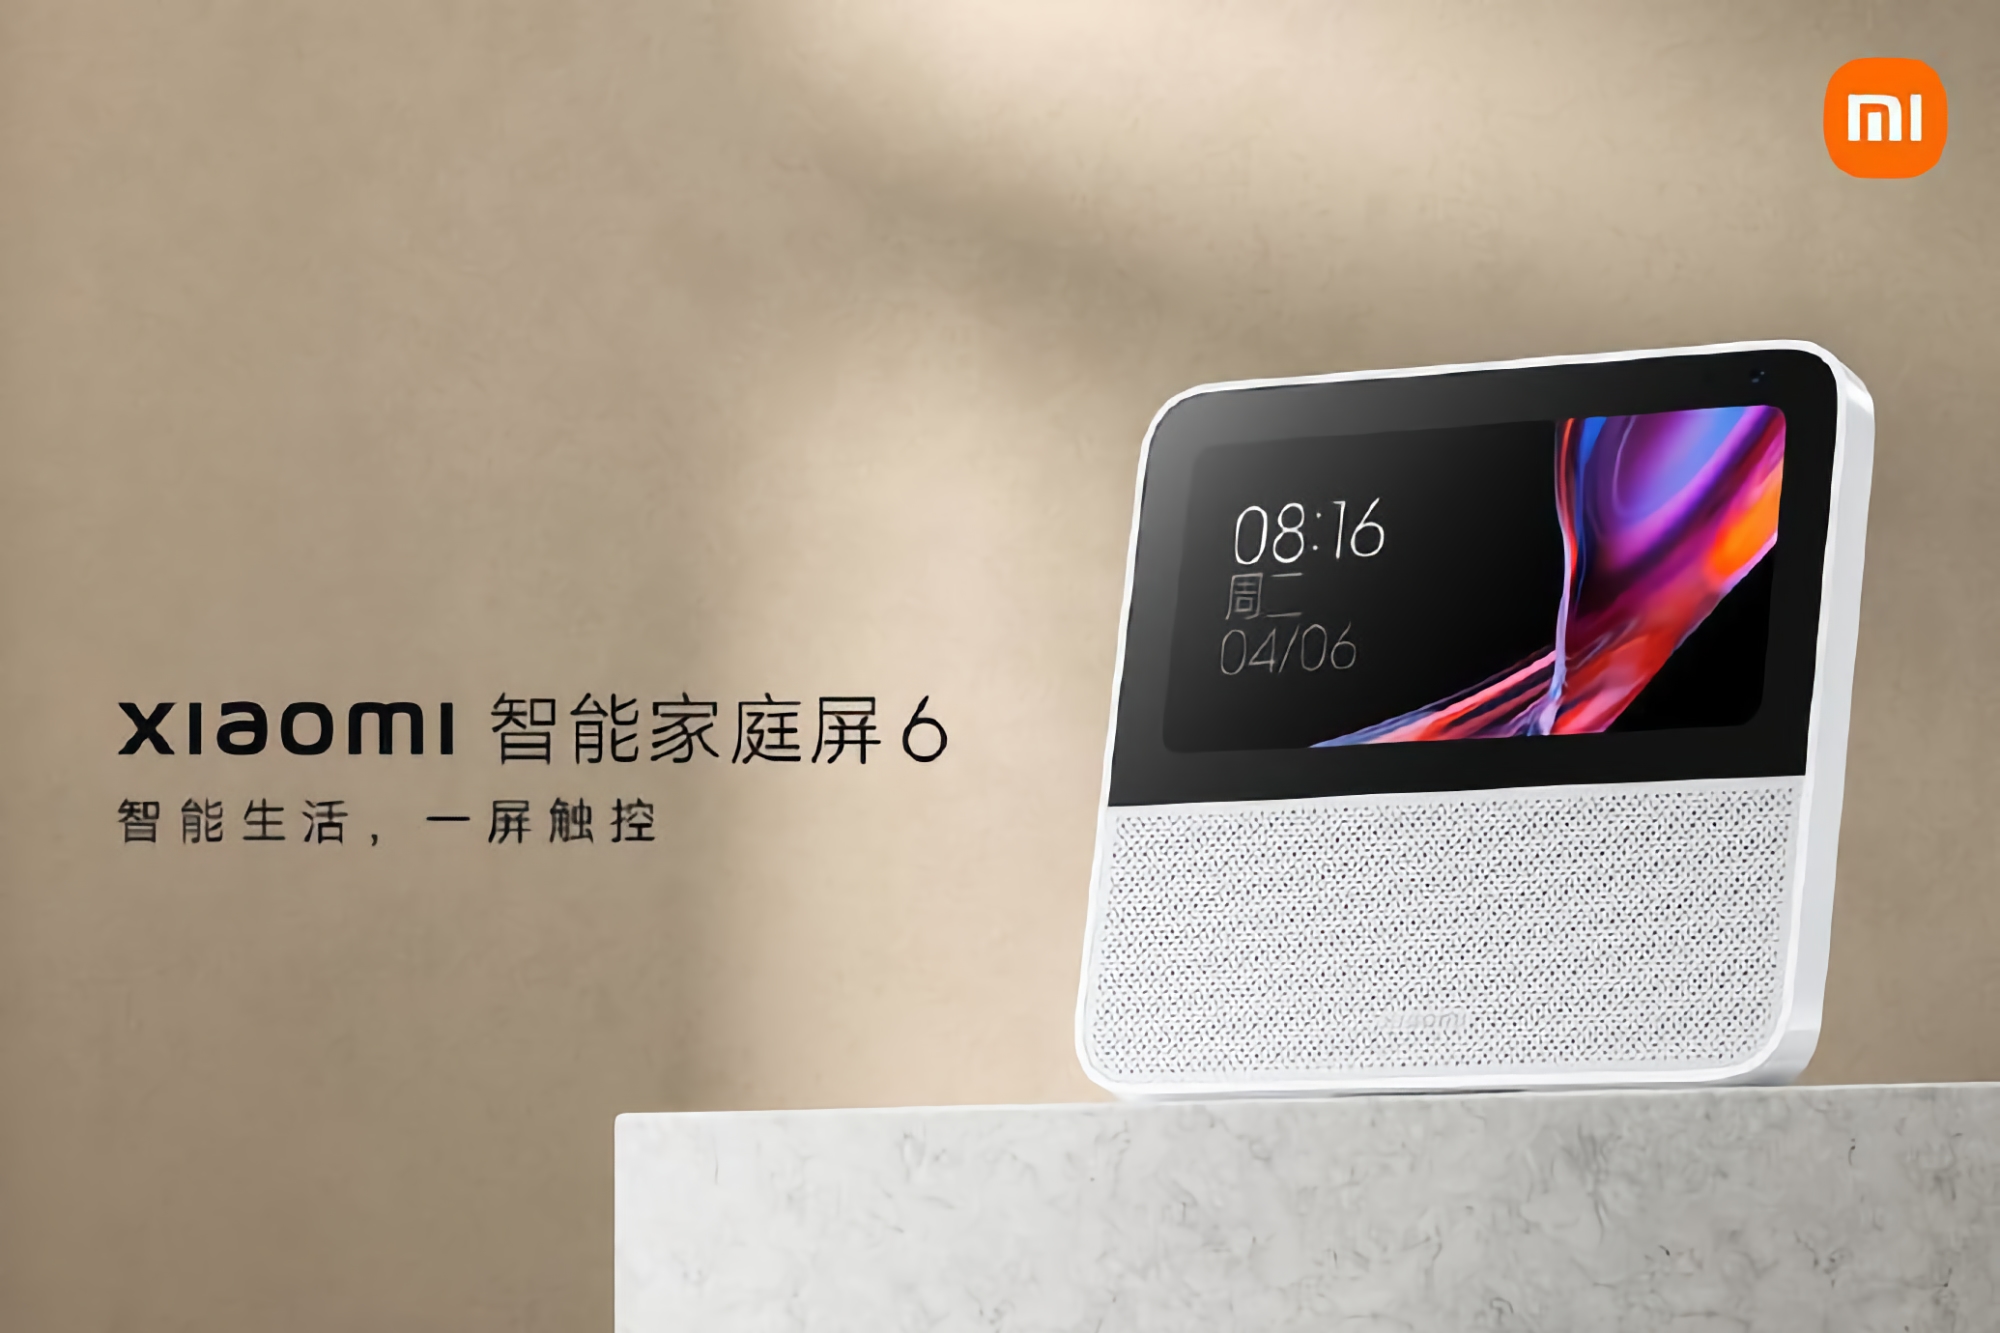 Xiaomi dévoile le Smart Home Display 6 : écran de 6 pouces, appareil photo 2MP et assistant vocal intégré pour 52 $